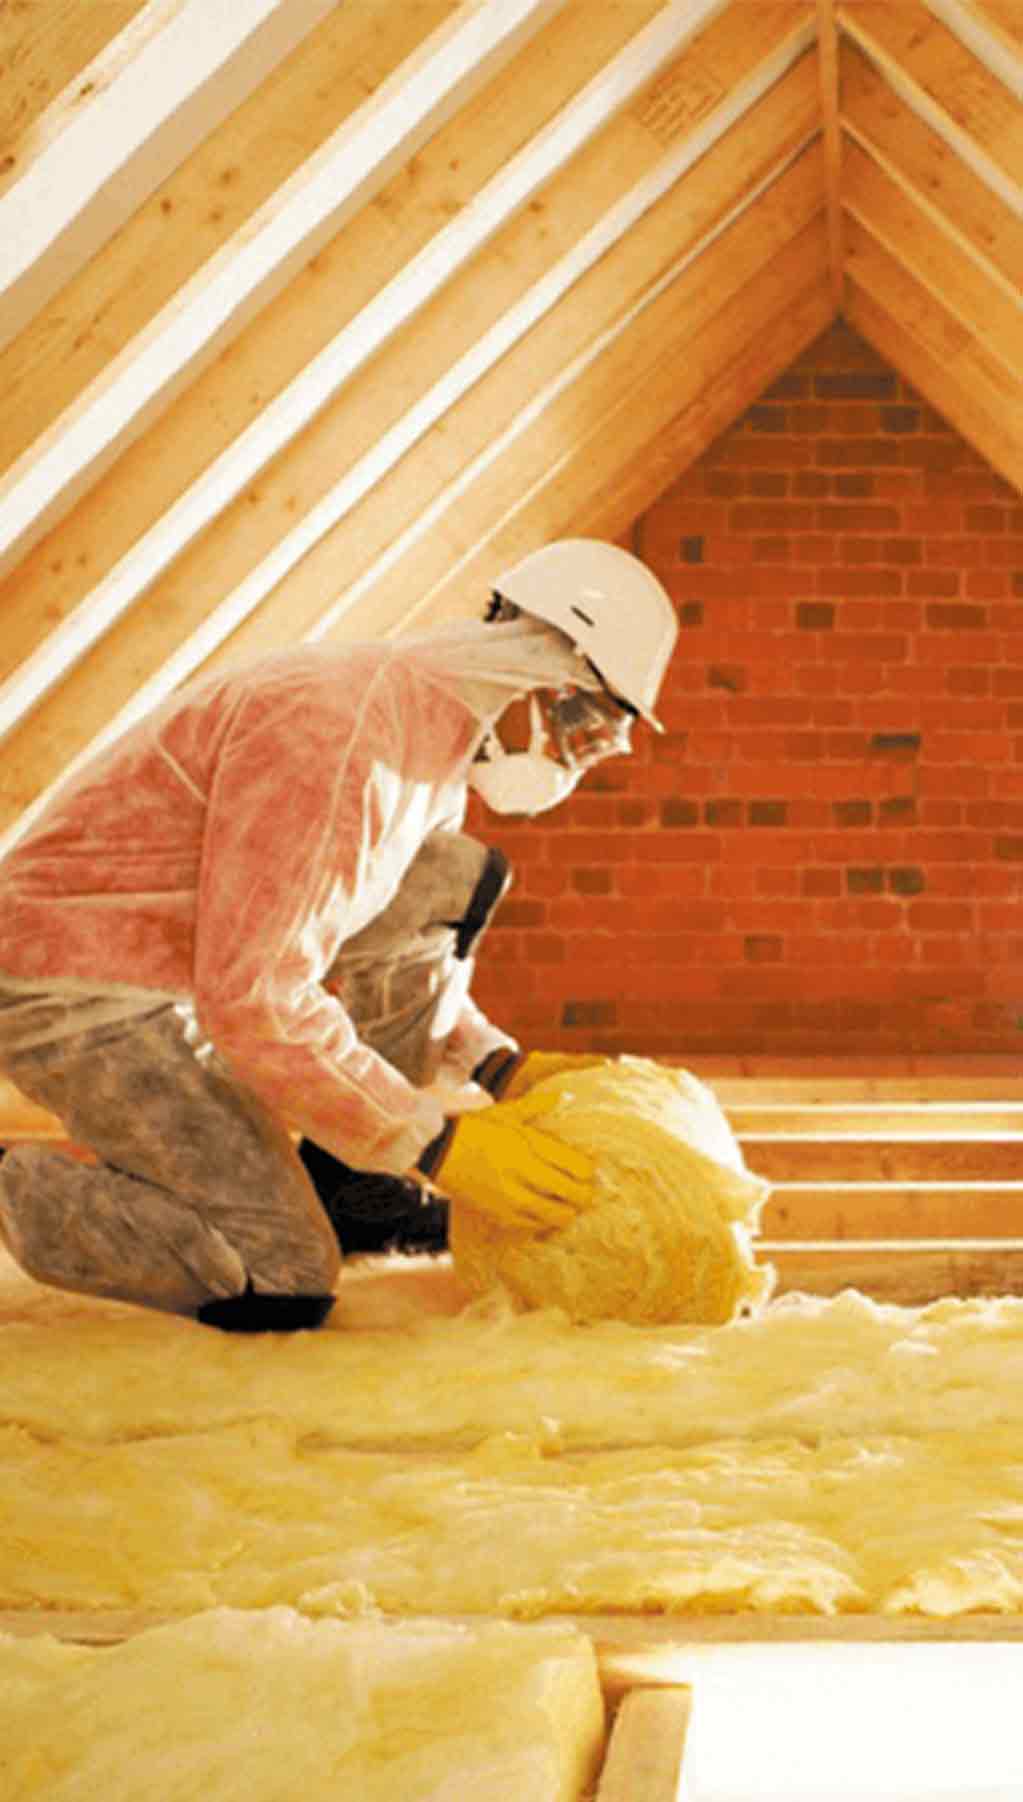 E.ON installer installing insulation